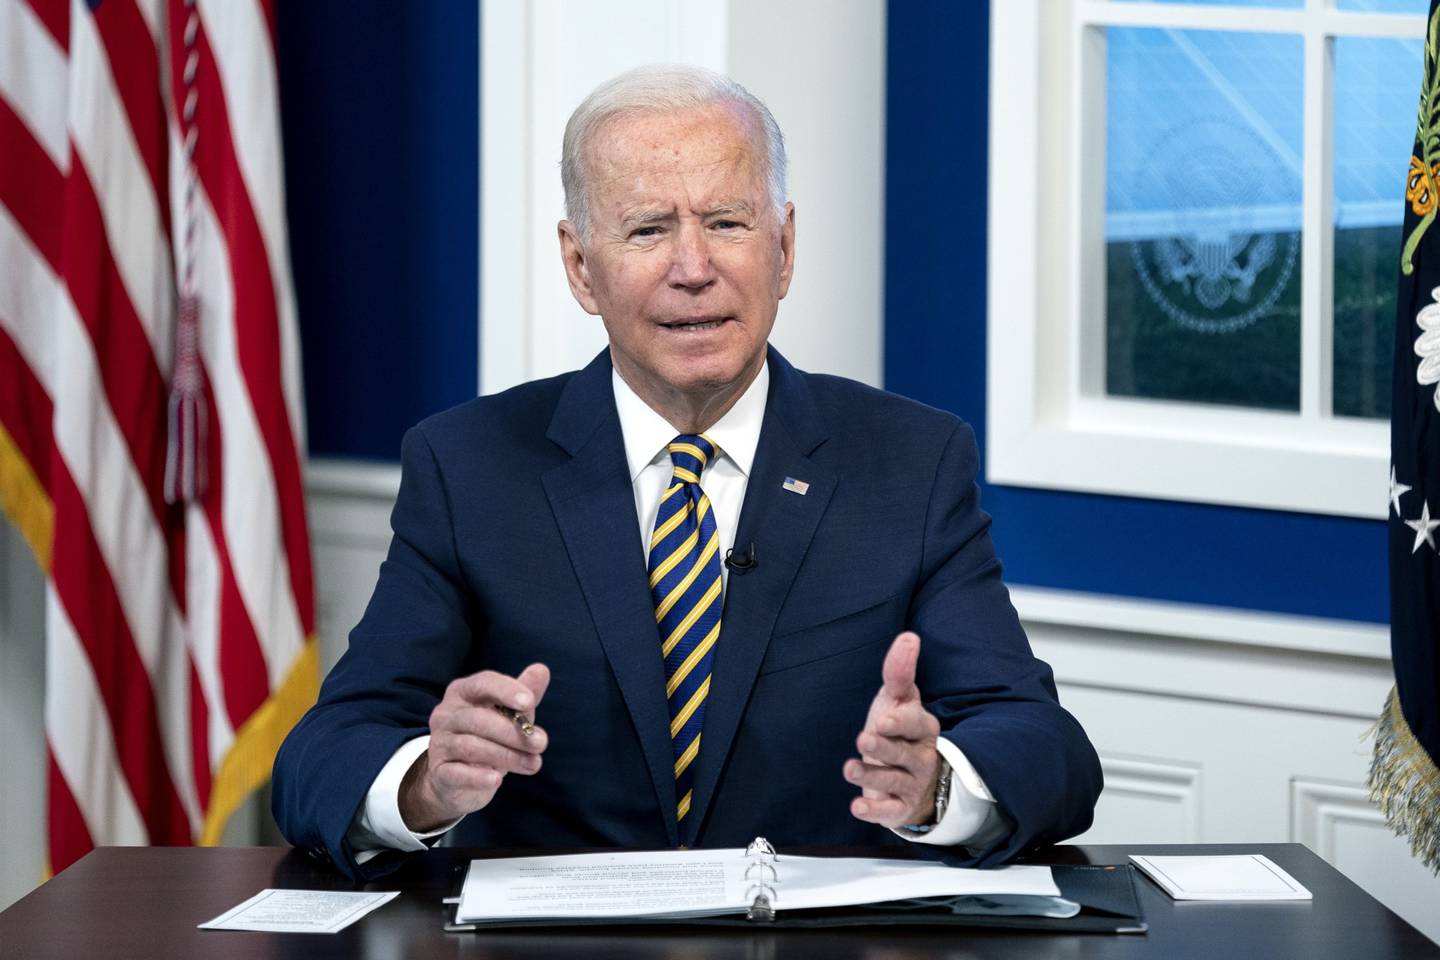 Biden es el anfitrión del debate virtual sobre el cambio climático con los líderes mundiales, mientras intenta acelerar los esfuerzos para reducir los gases de efecto invernadero. Fotógrafo: Stefani Reynolds/Bloomberg